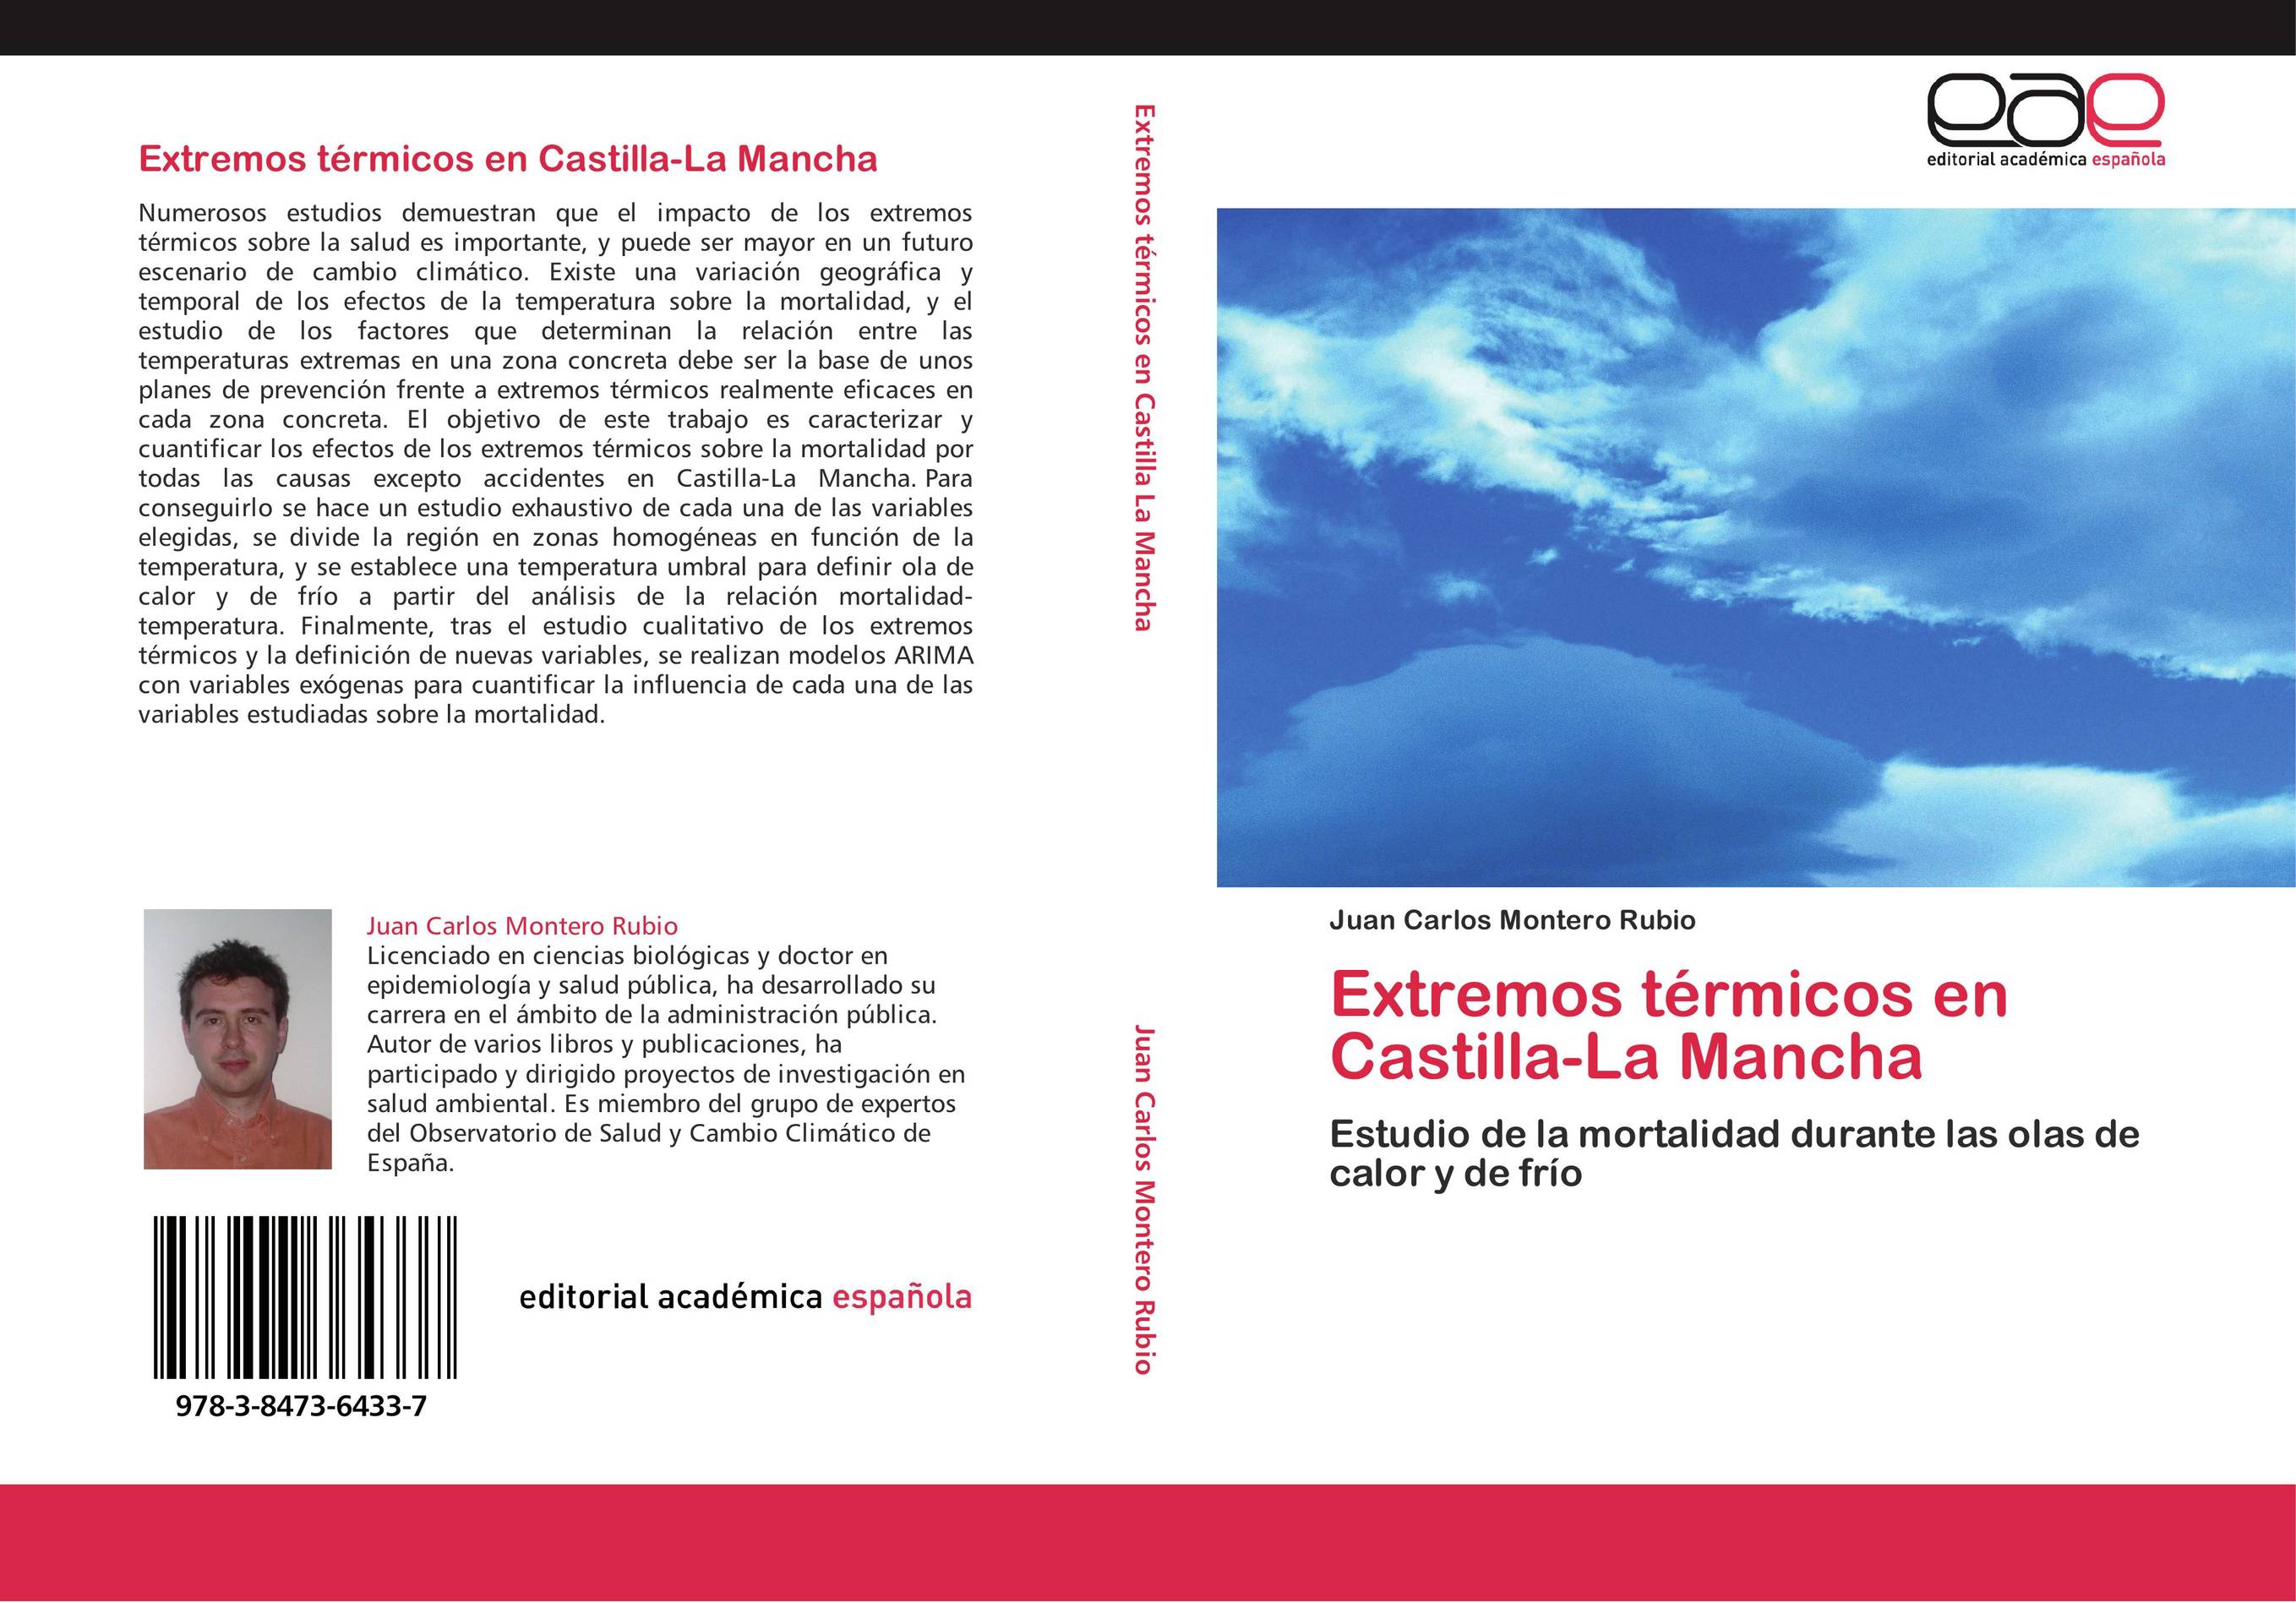 Extremos térmicos en Castilla-La Mancha